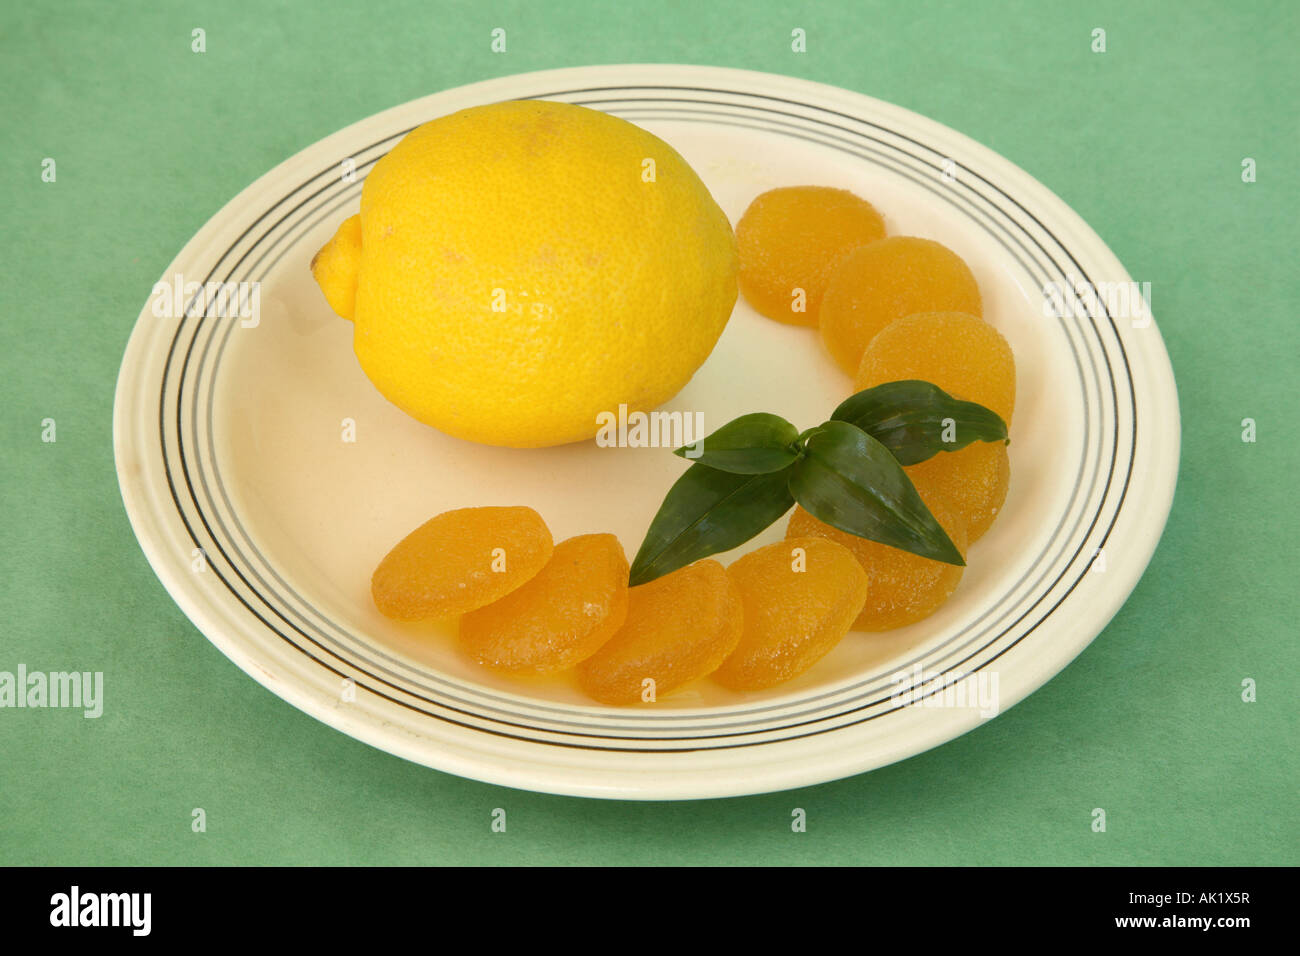 Limone giallo su una piastra con una mezzaluna di circolare di gelatina di Limoni canditi in arco sulla destra con un pezzo di verde Foto Stock